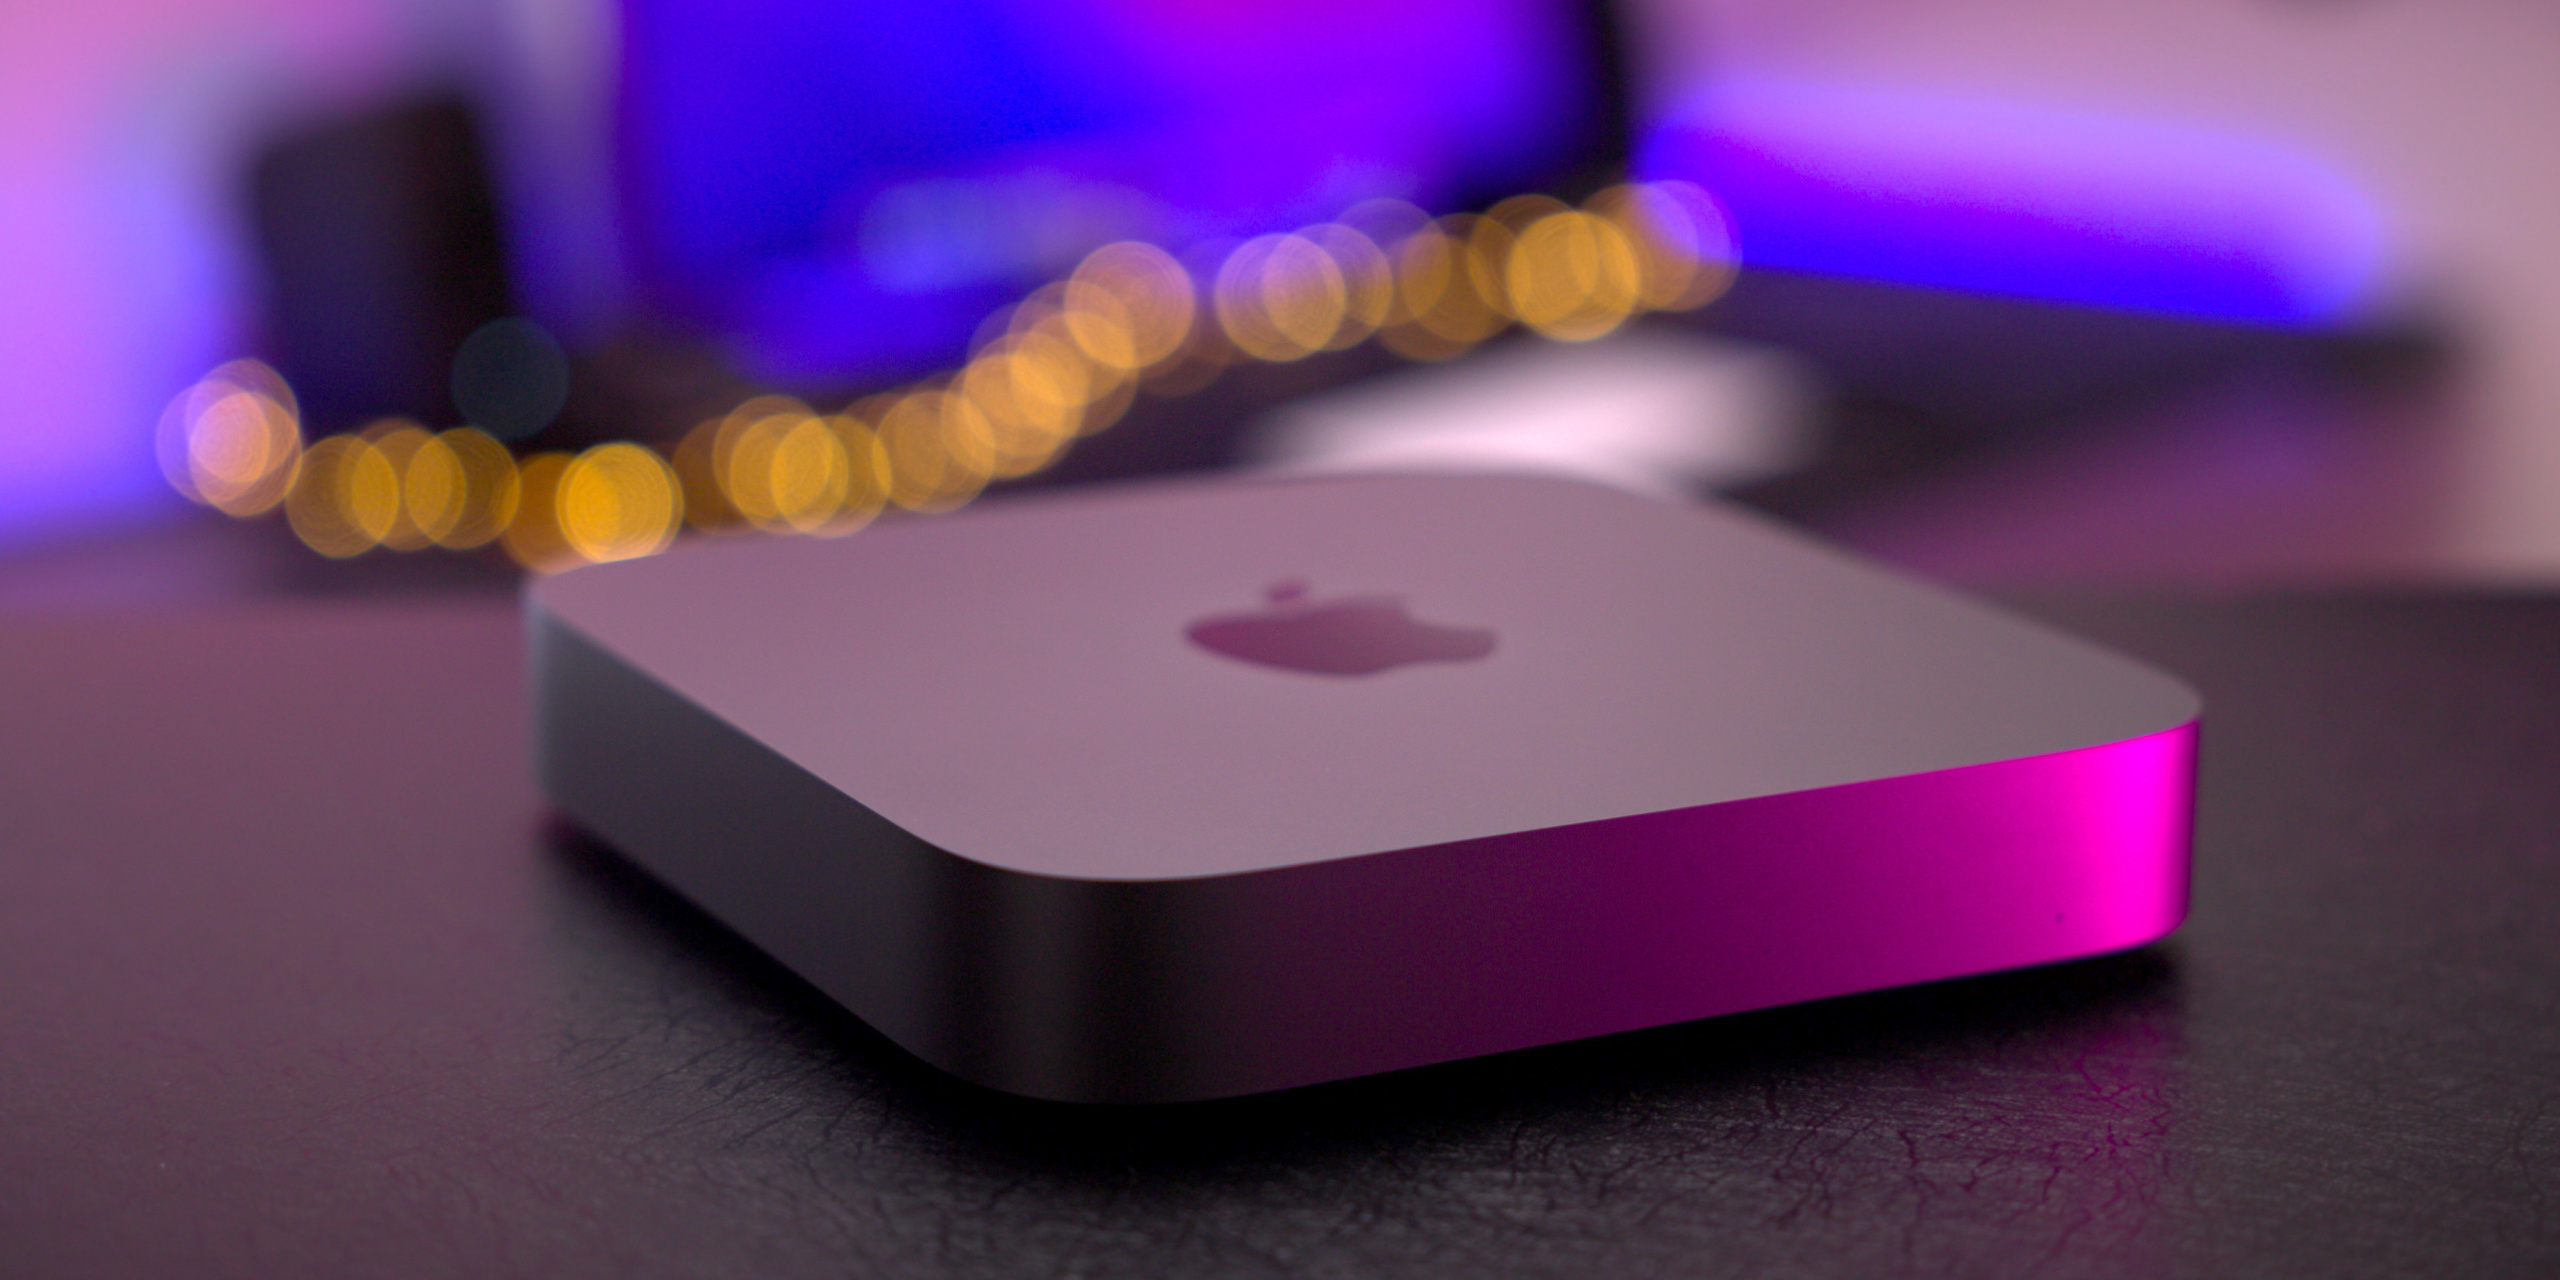 Apple Mac Mini M1 Review: Mini Footprint, Max Performance